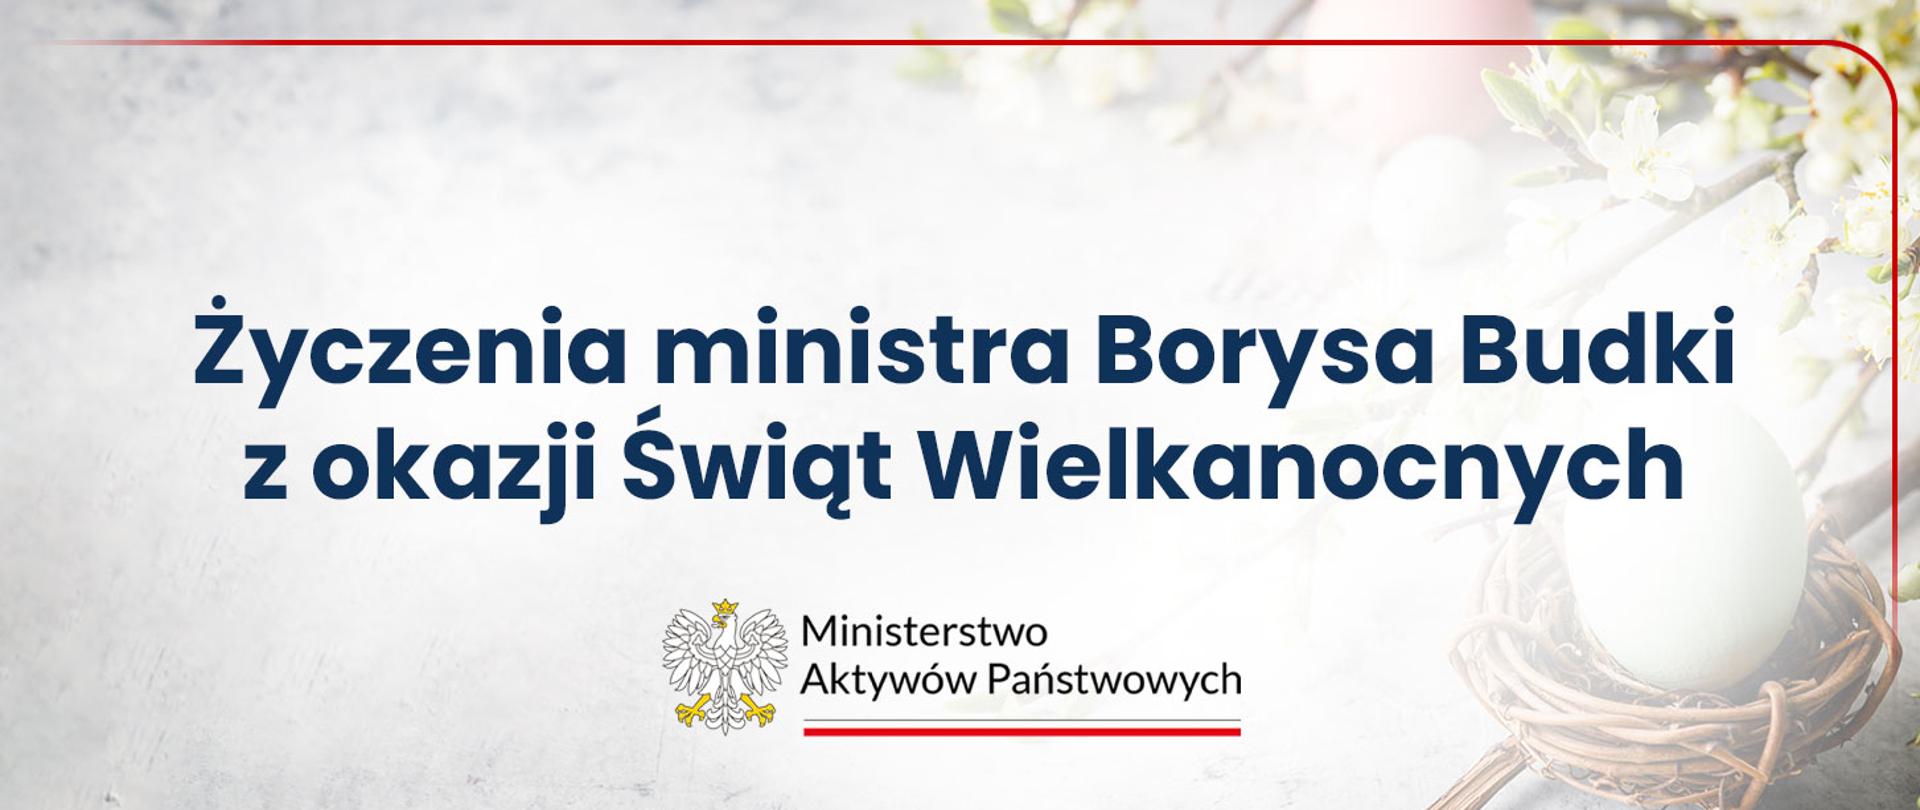 Grafika z napisem "Życzenia ministra Borysa Budki z okazji Świąt Wielkanocnych.", jako tło rozmyte zdjęcie gałązki i jajka. Pod napisem logo MAP.